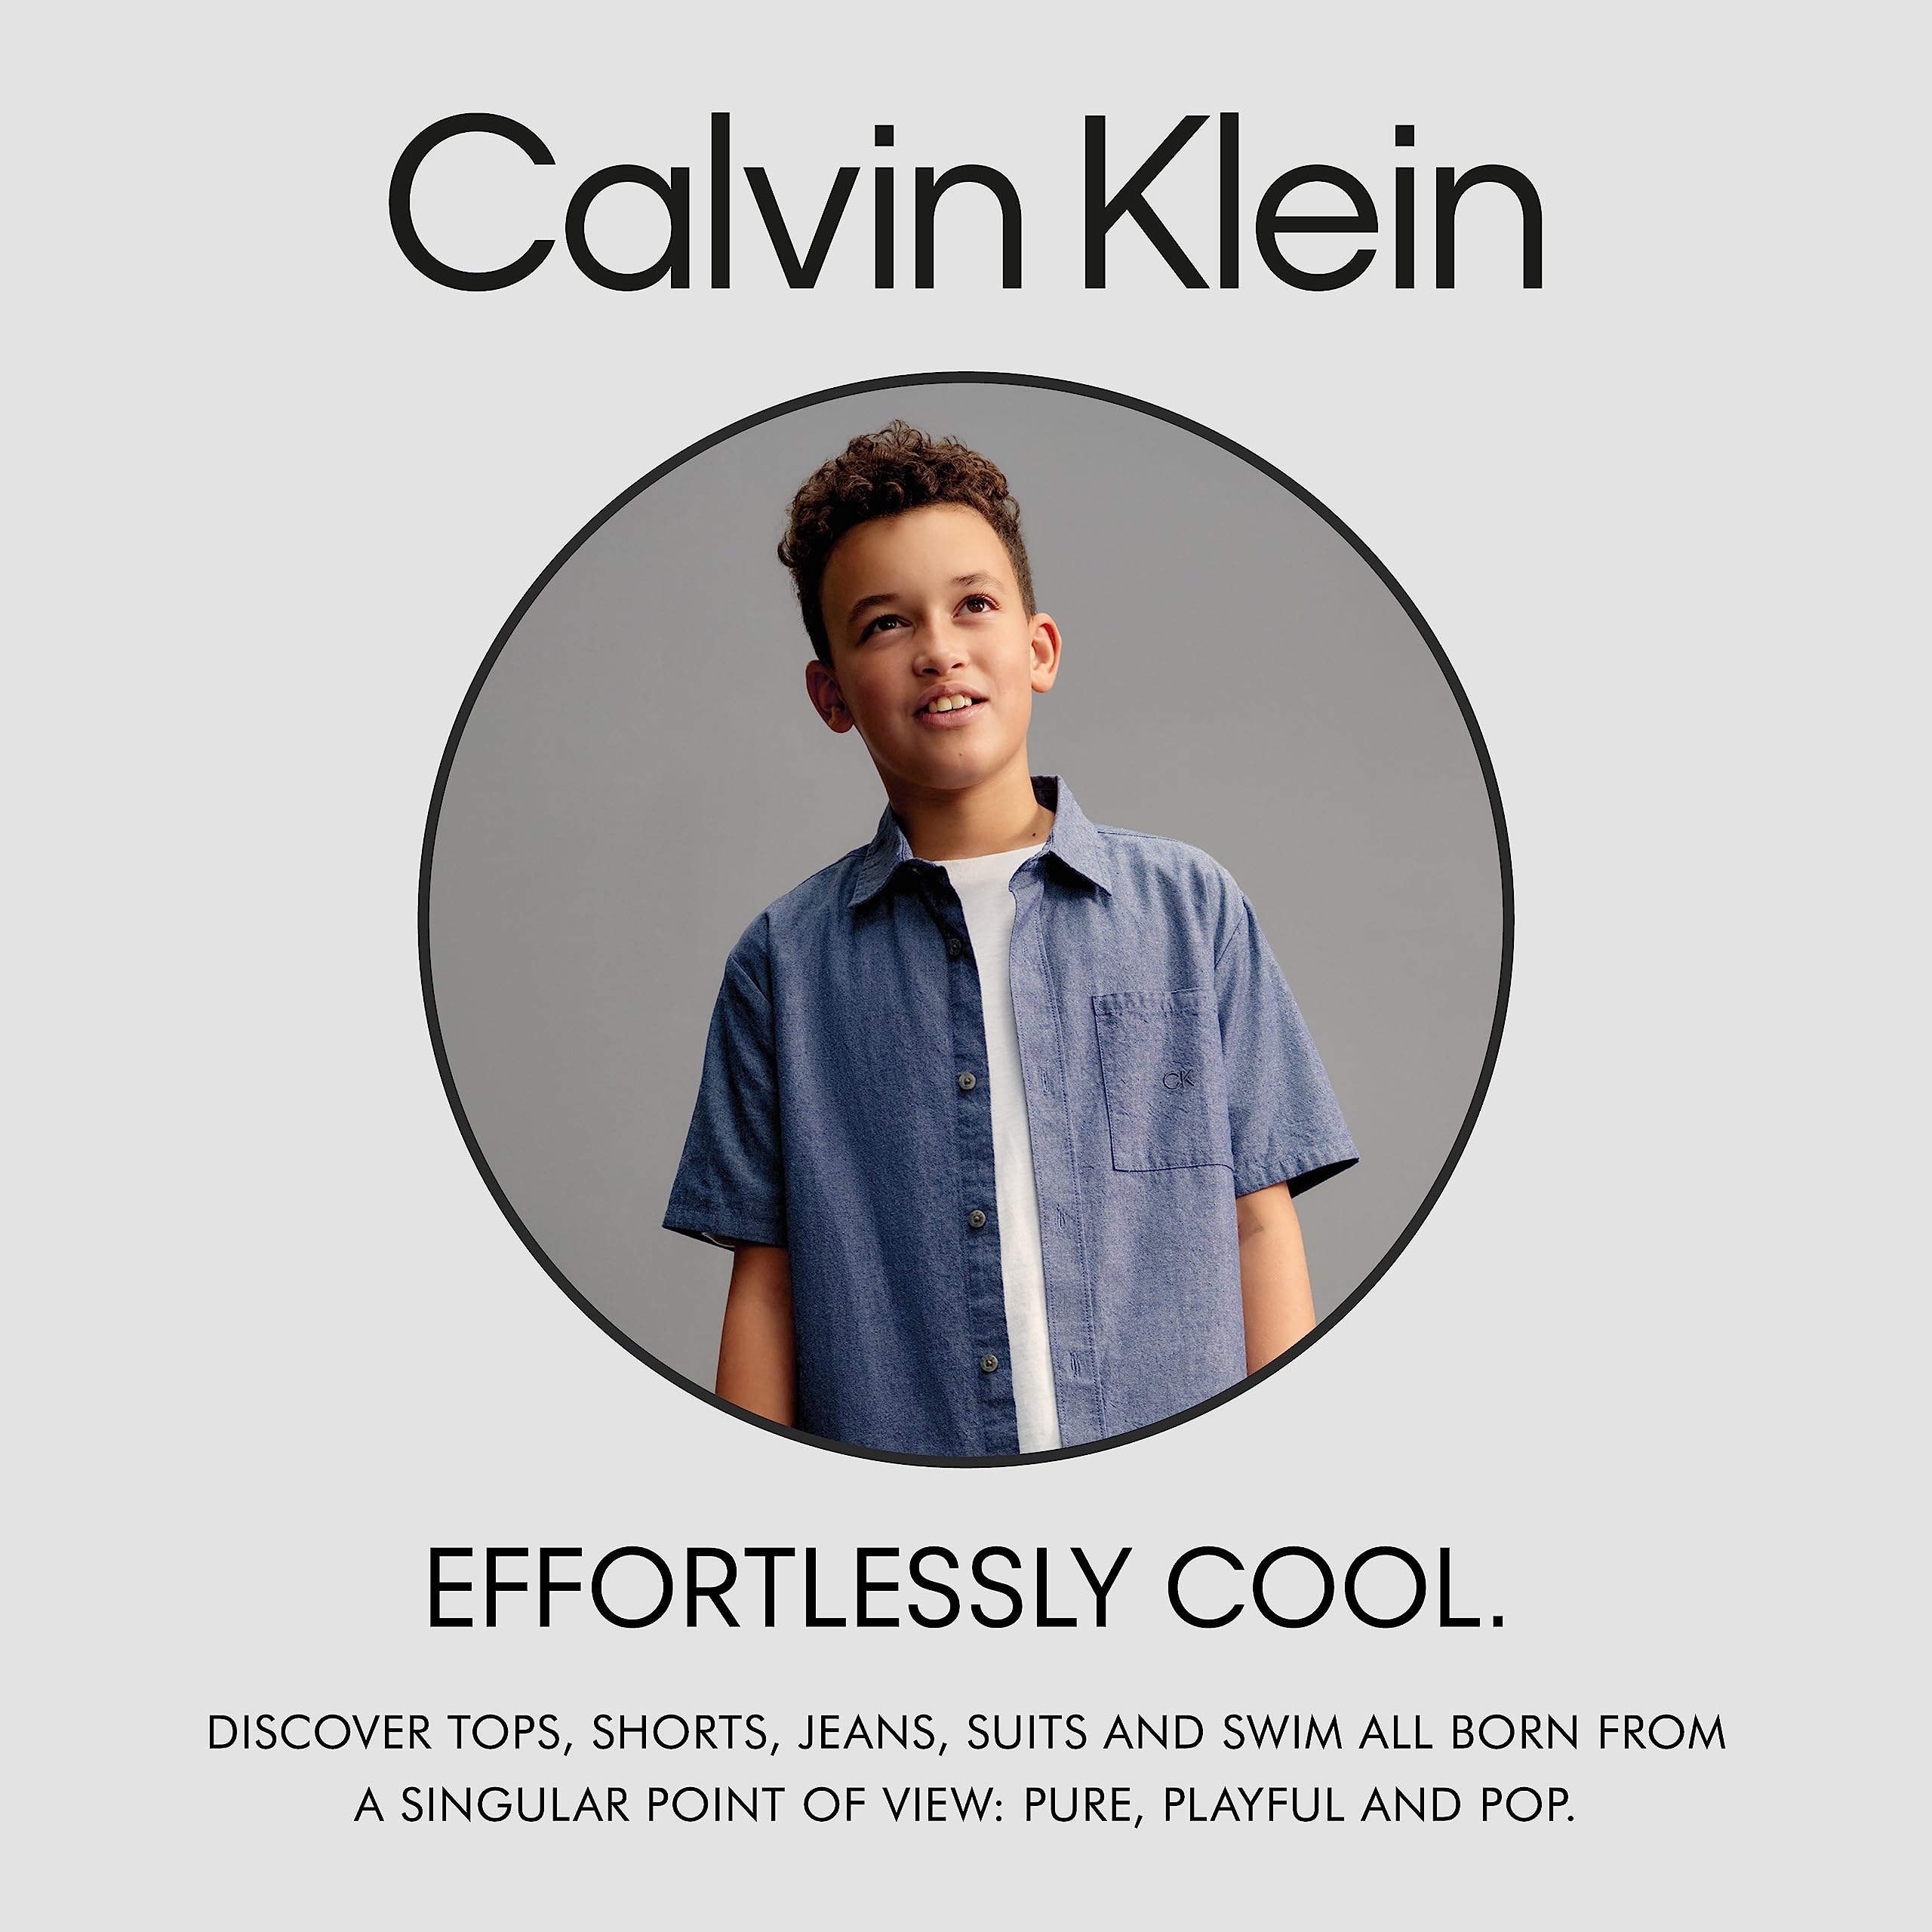 Calvin Klein Boys' Short Sleeve Woven Button-Down Shirt